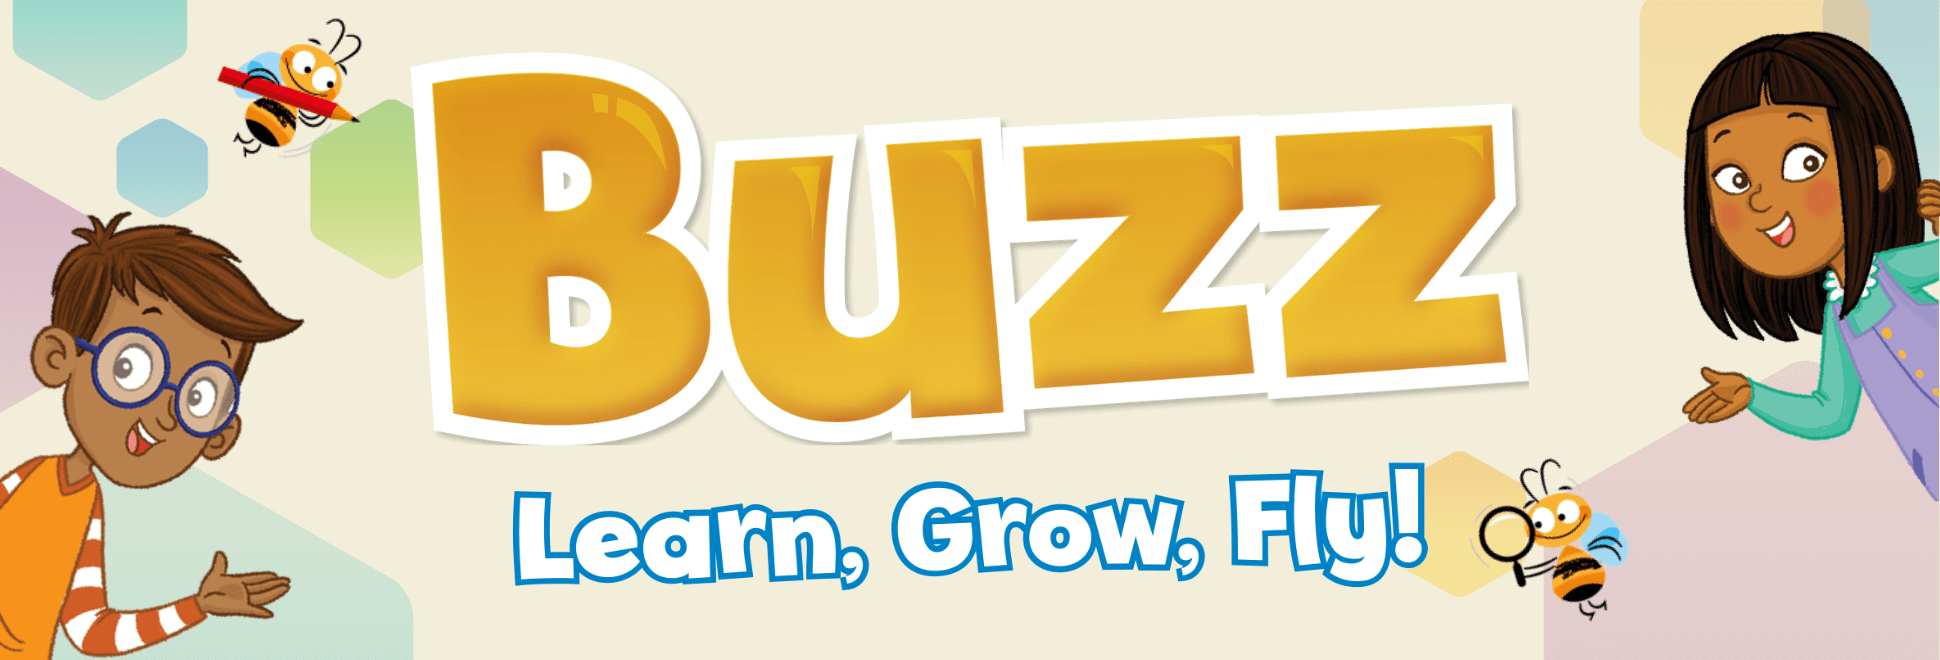 Buzz Learn,Grow,Fly!